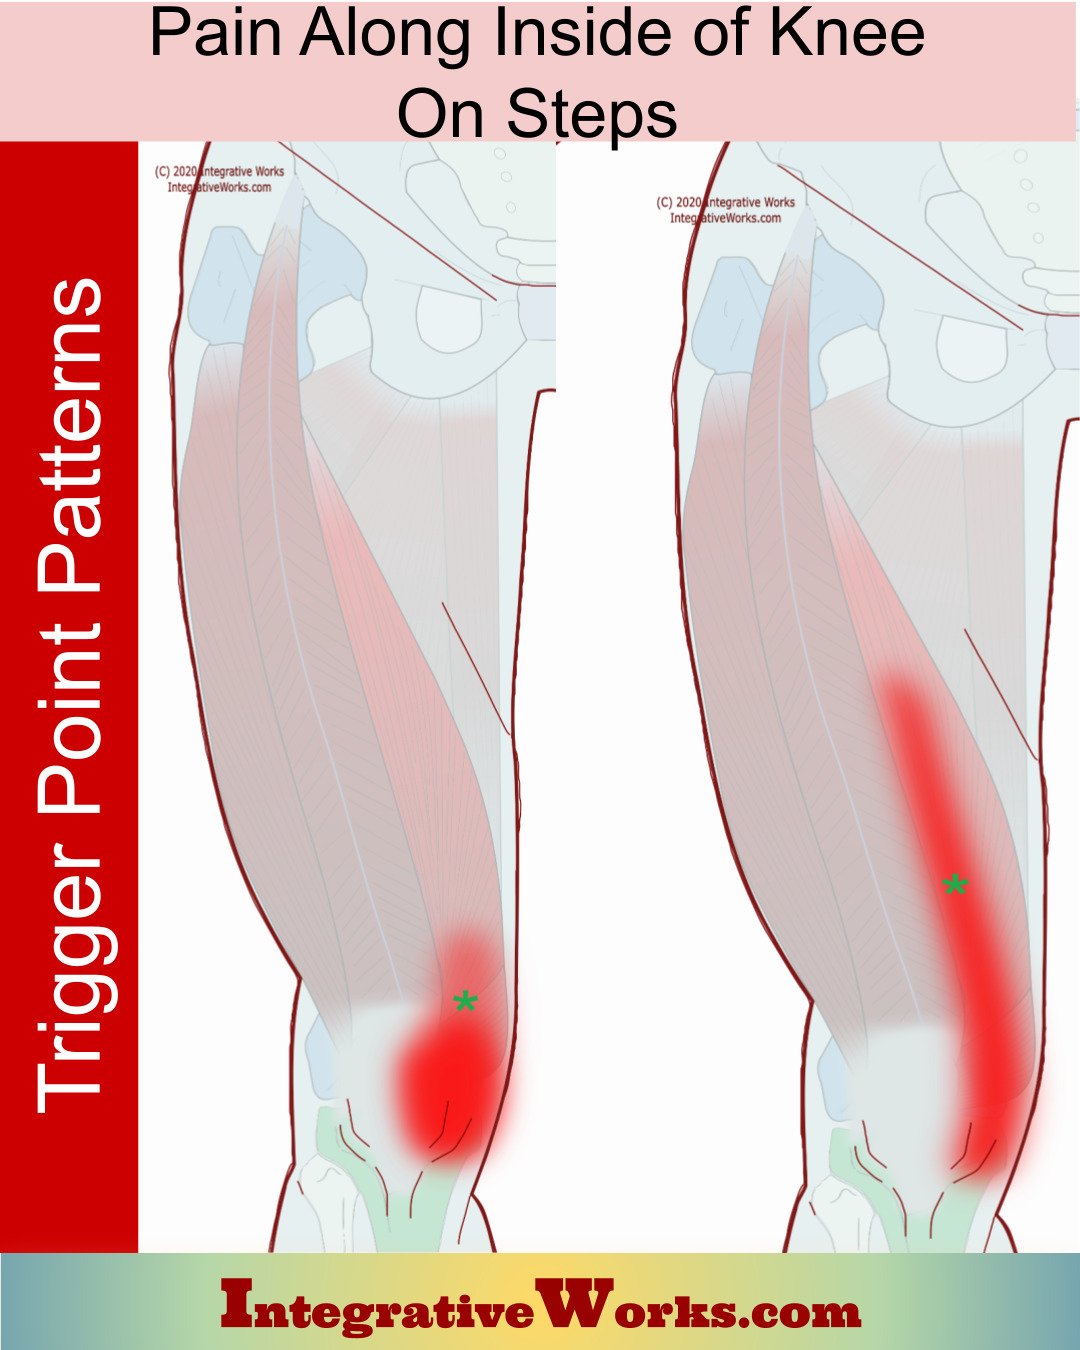 Pain Along Inside of Knee on Steps